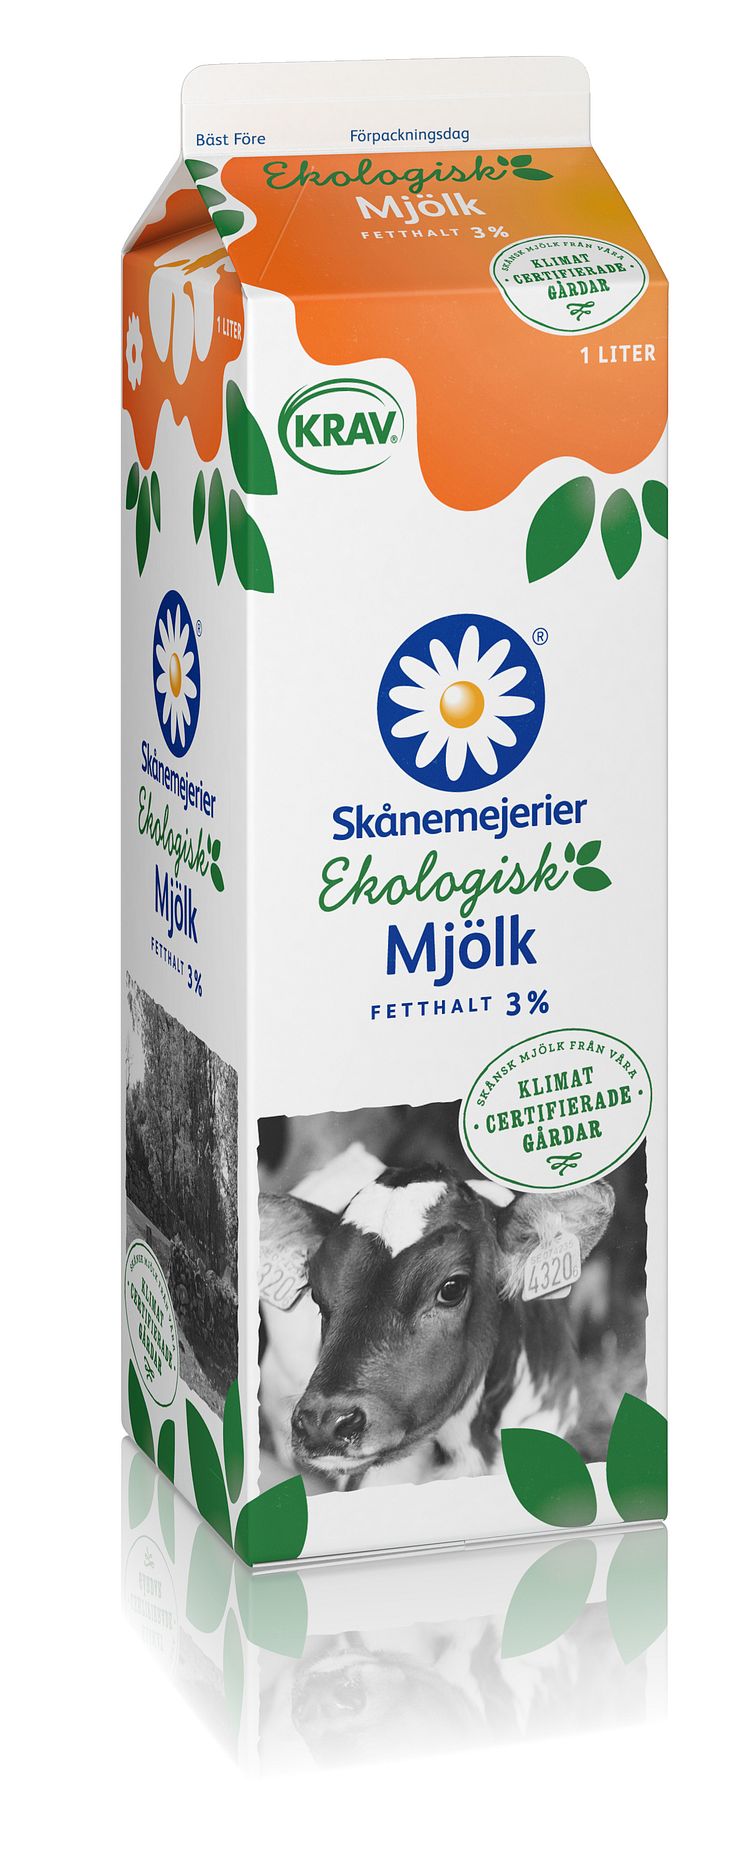 Mjölk från klimatcertifierad gård